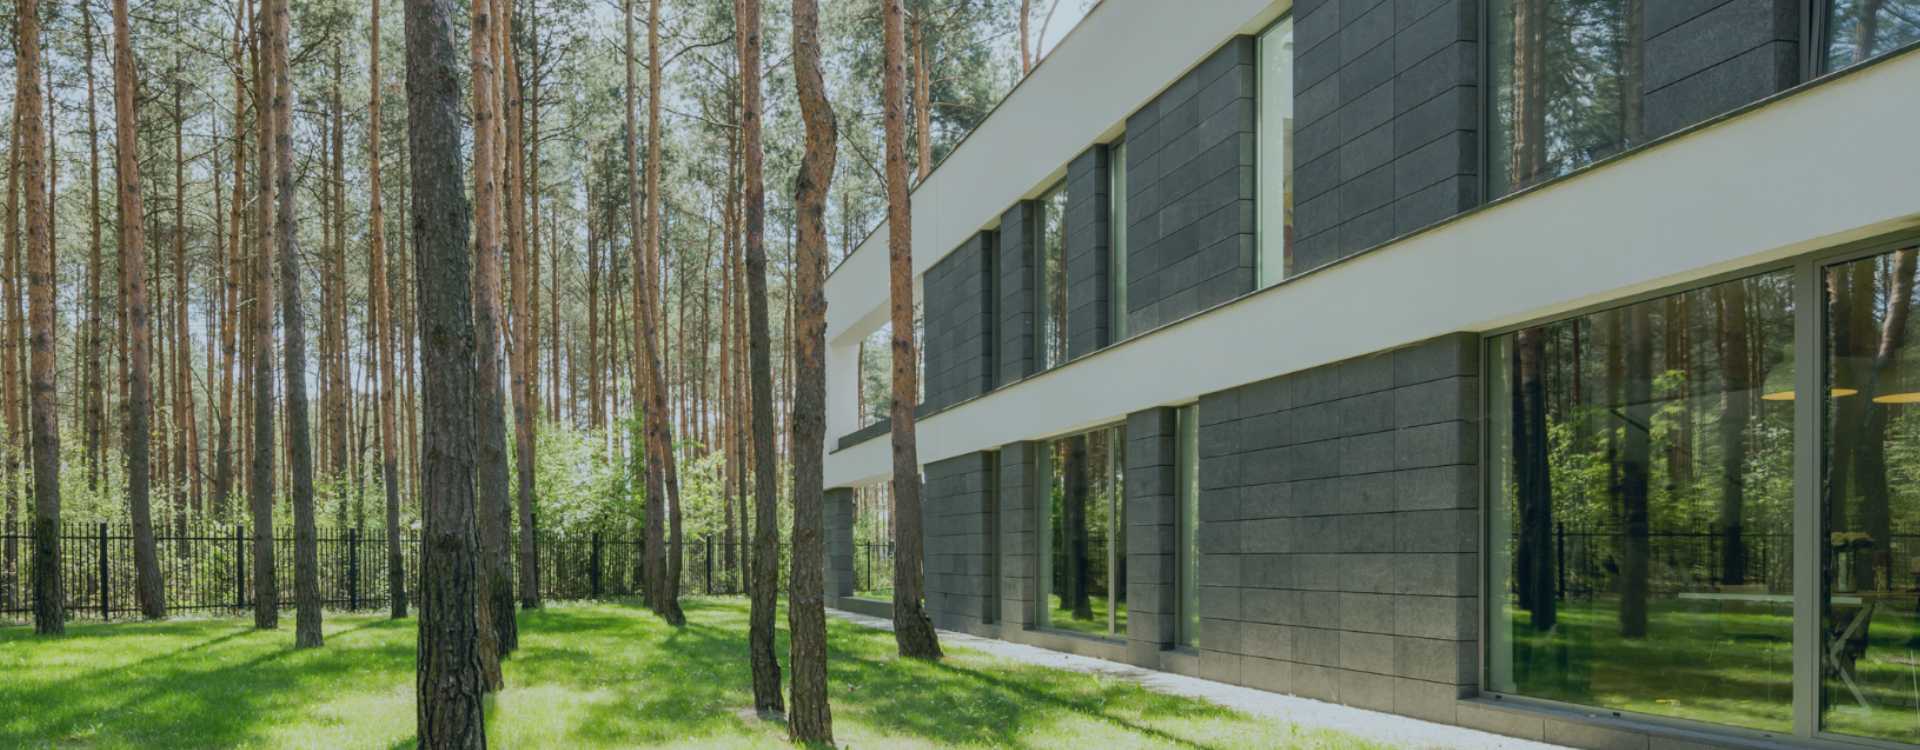 Modernes Gebäude Wald